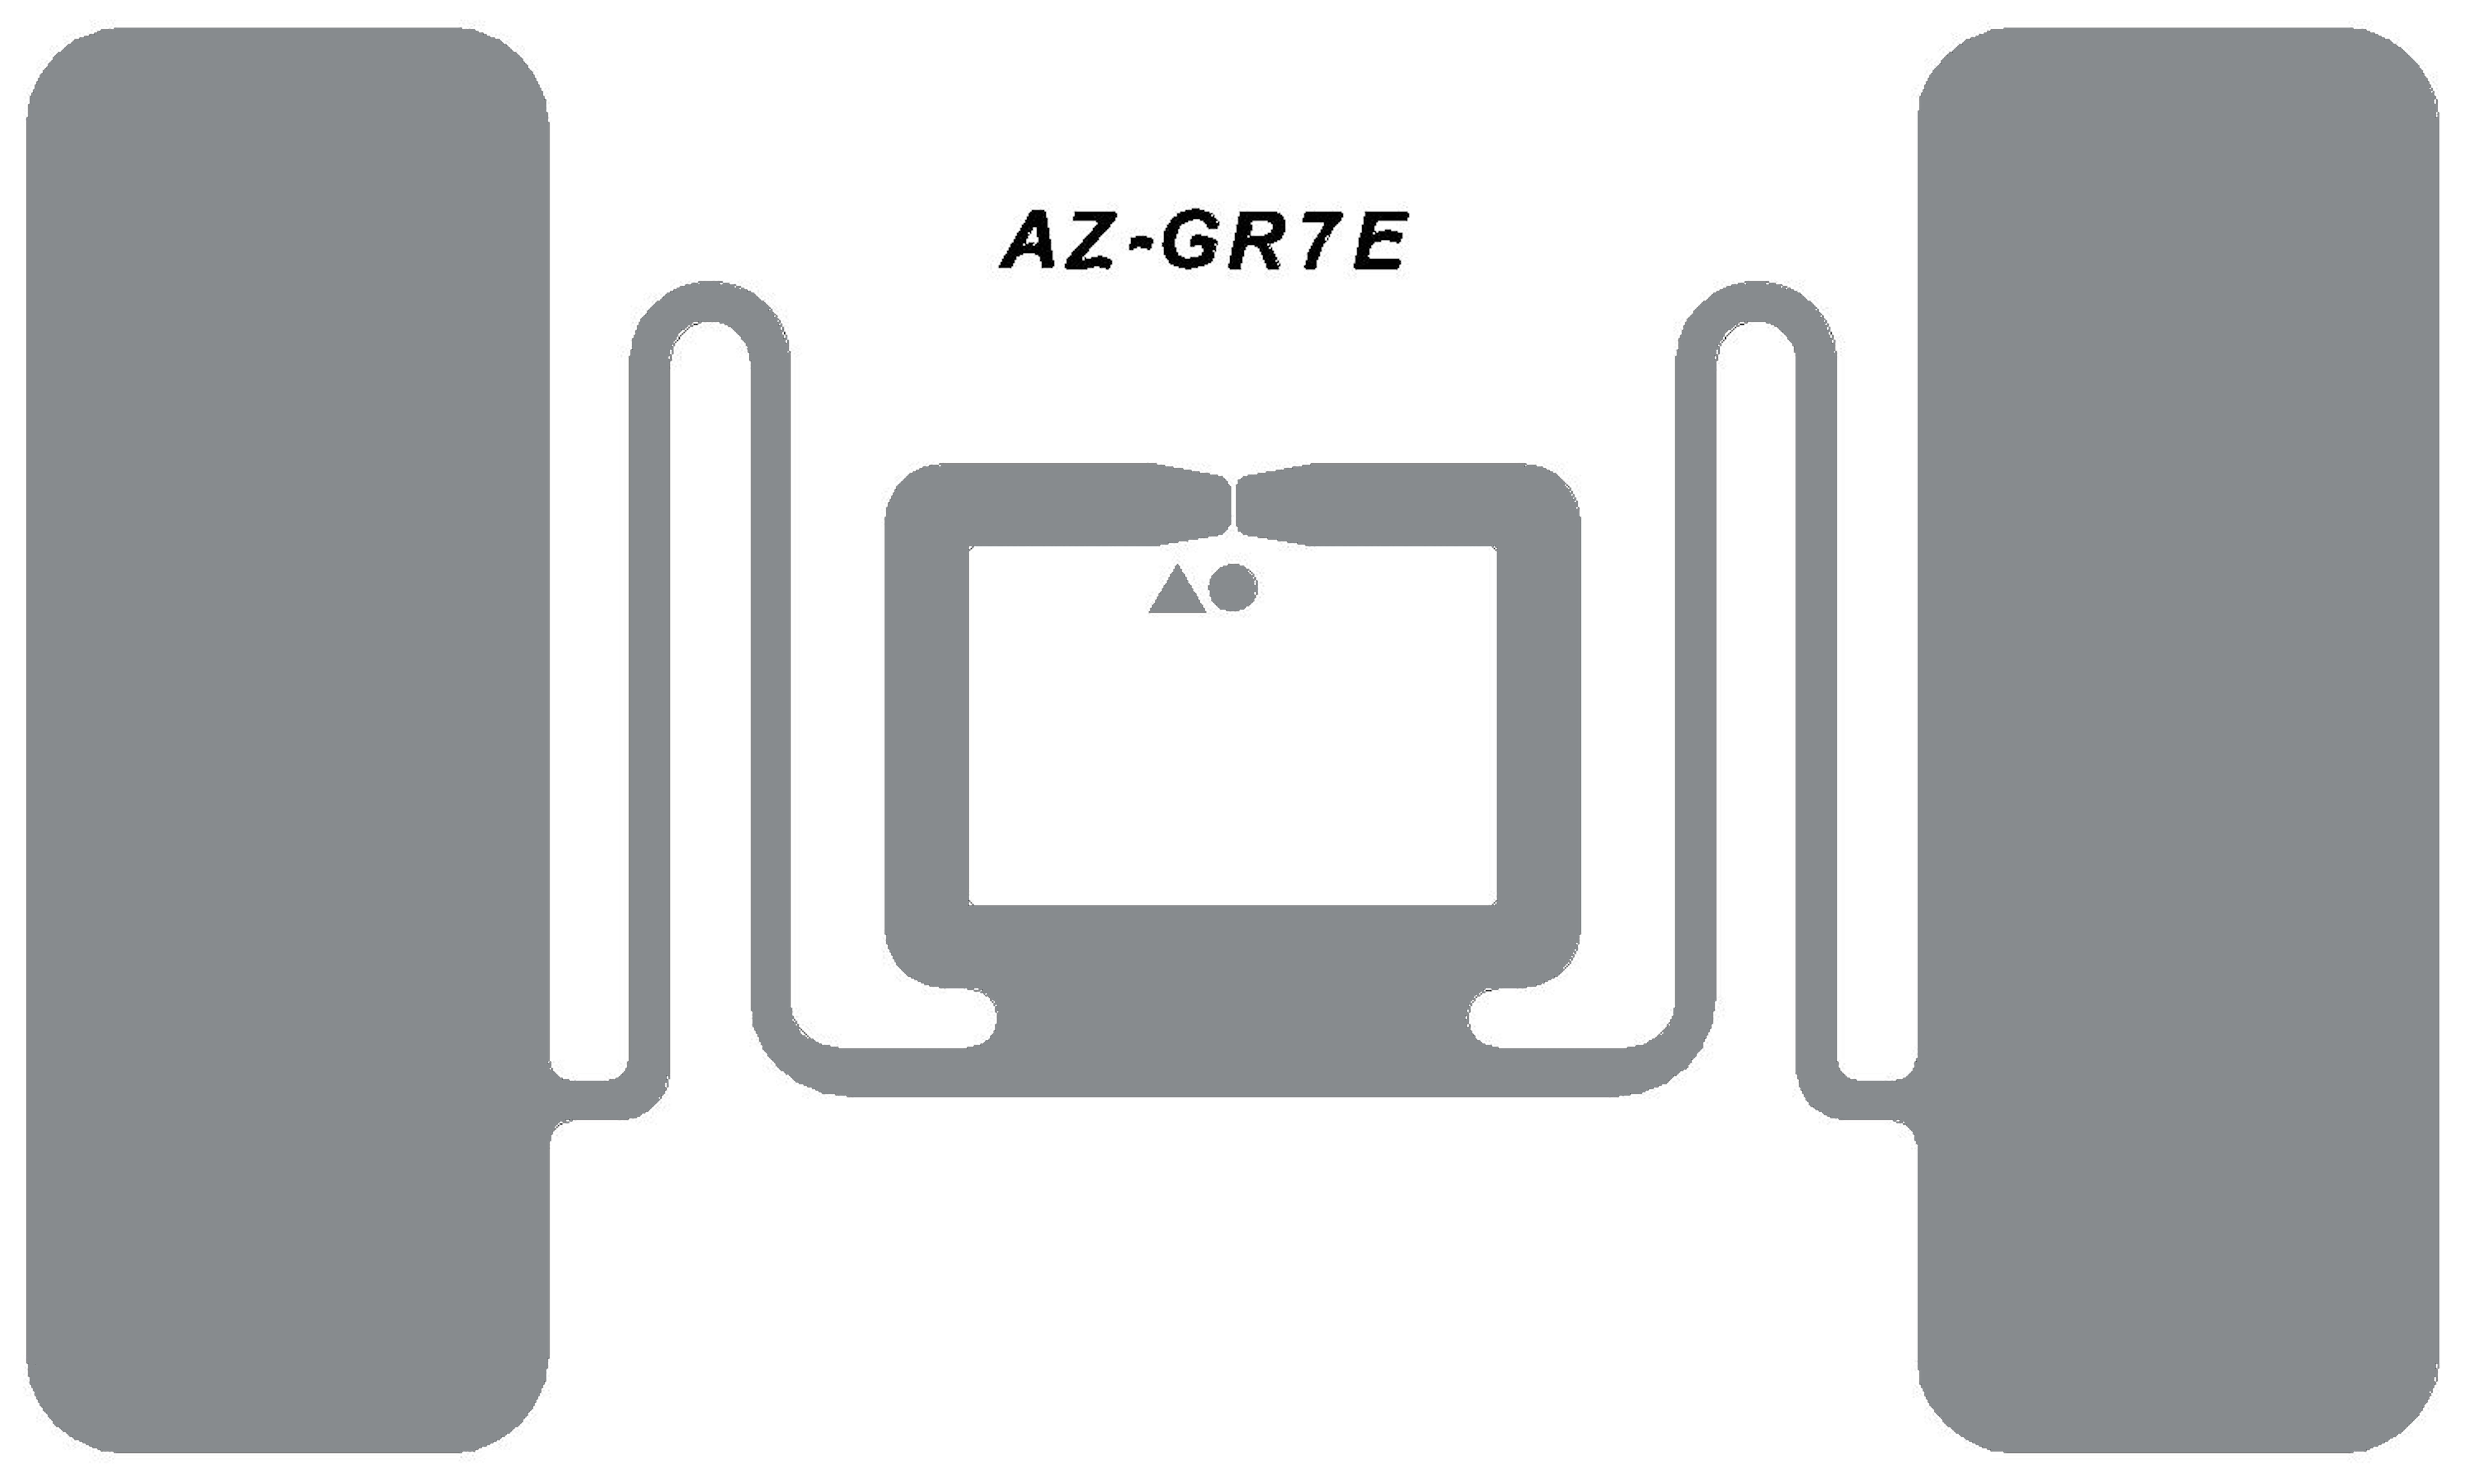 AZ-GR7E